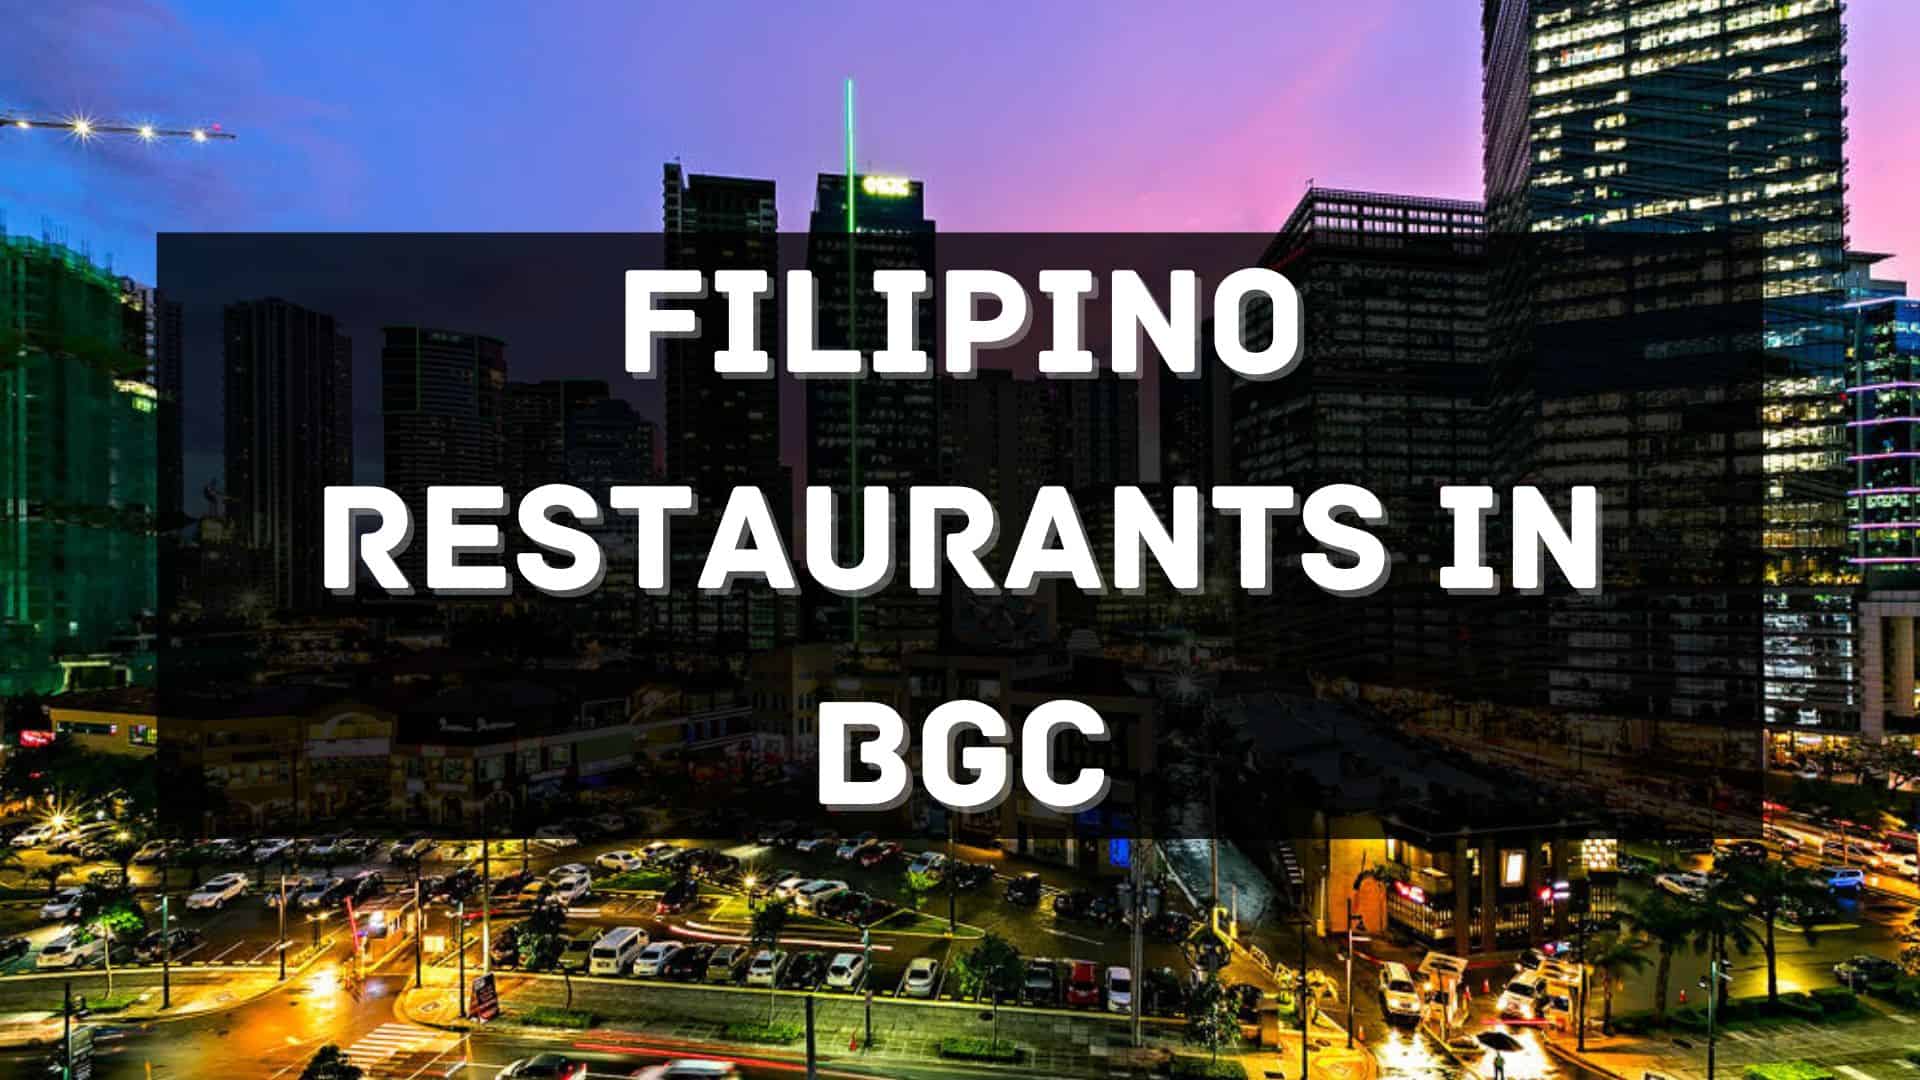 BGC Filipino Restaurants 